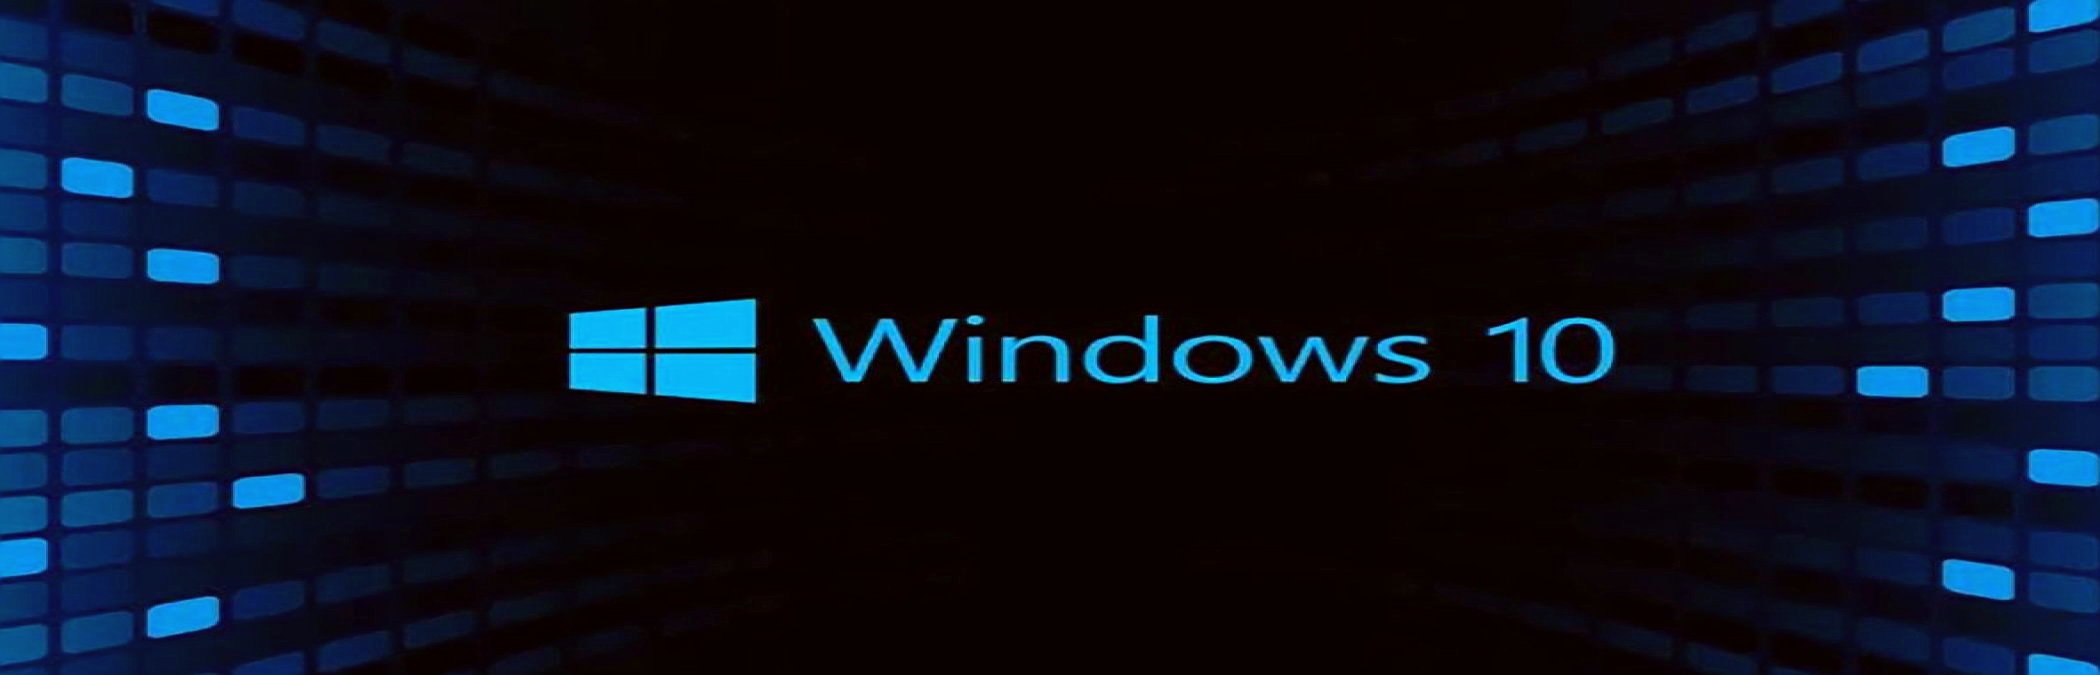 Windows 10’a Gelen Son Güncelleme Bazı Sorunlar Yaşattı